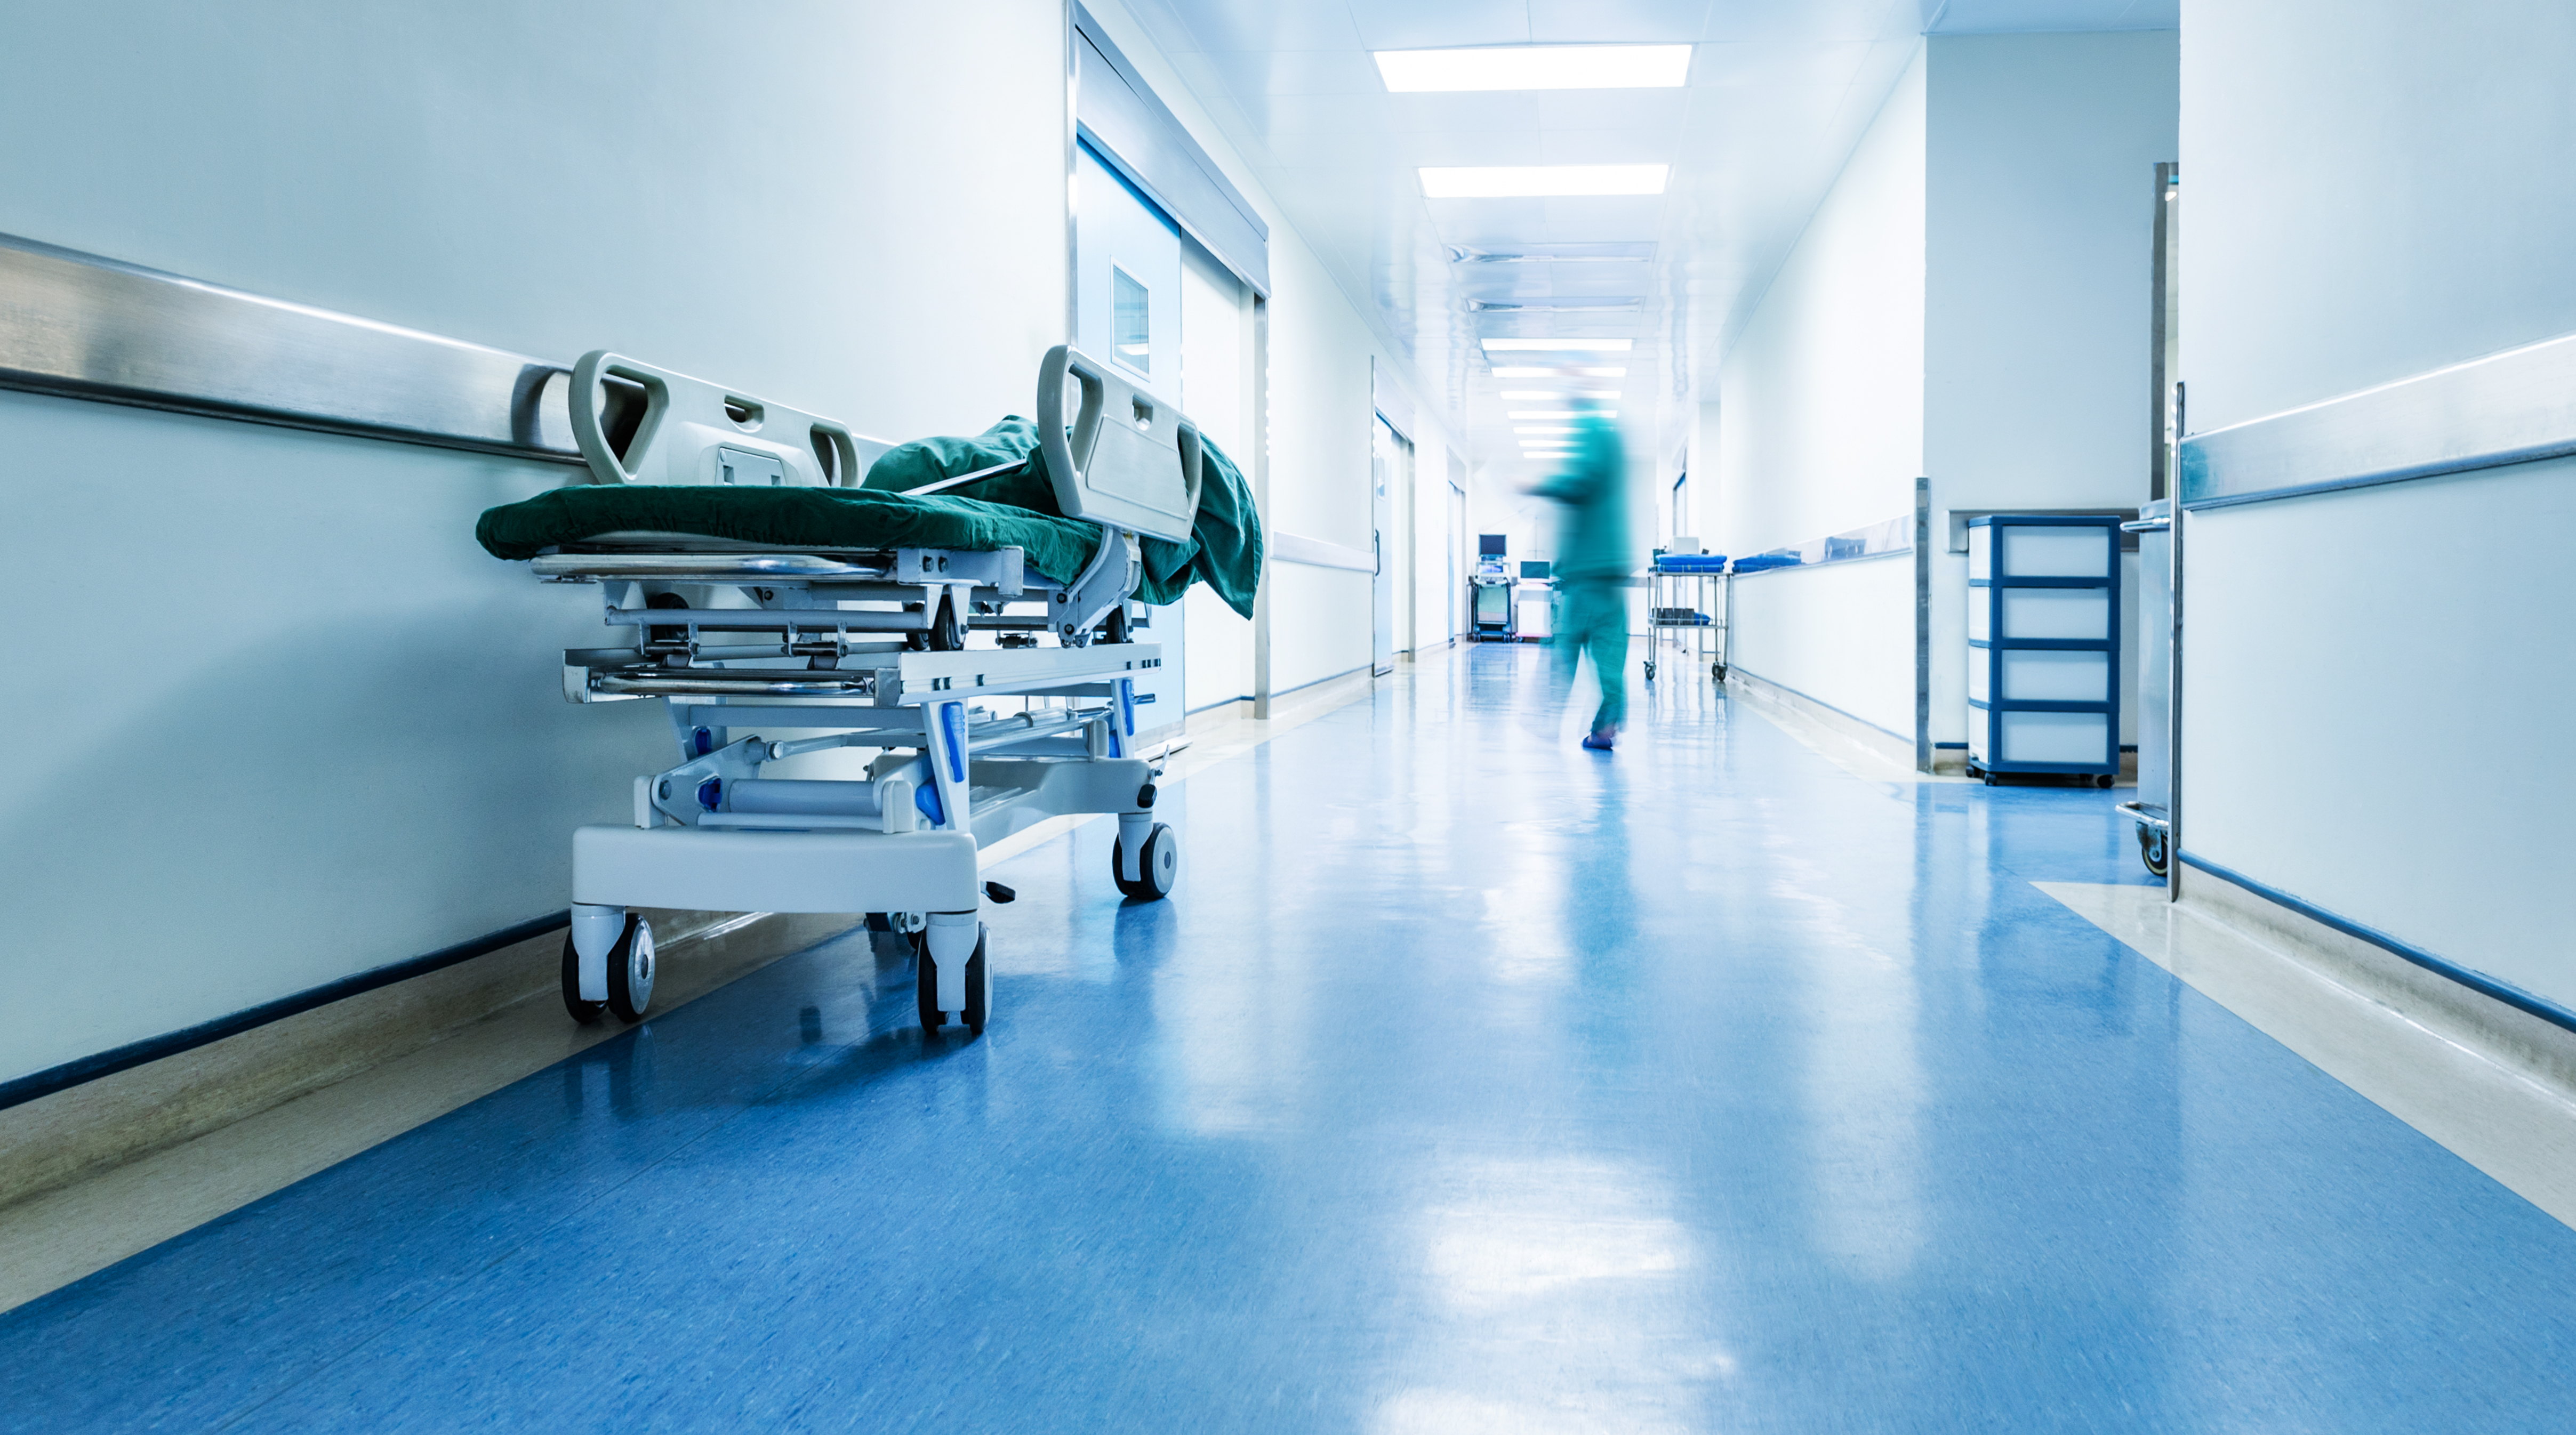 Médicos o enfermeras caminando por un hospital | Fuente: Shutterstock